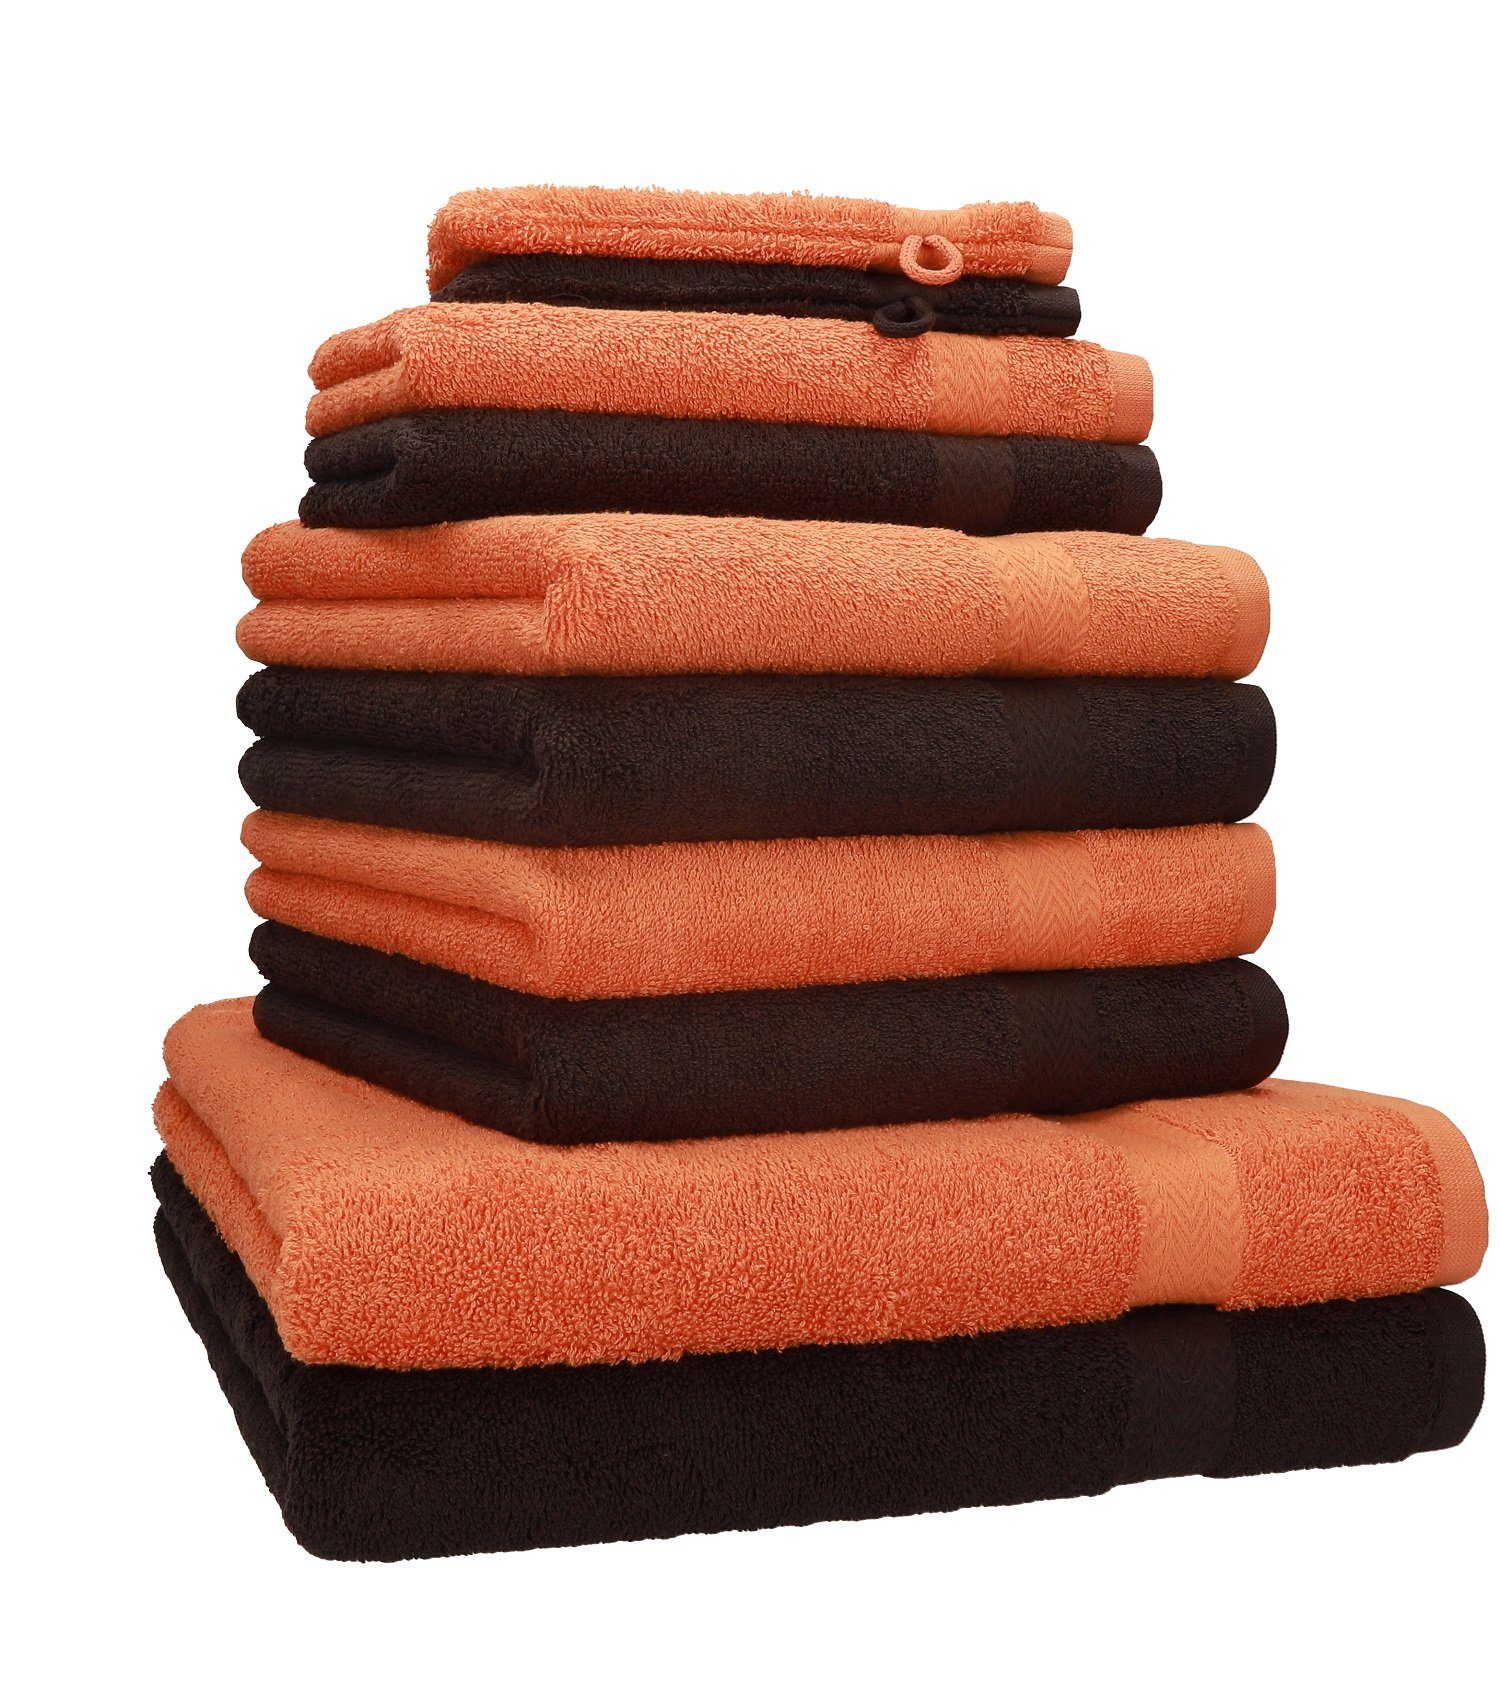 Betz Handtuch Set 10-TLG. Handtuch-Set Premium Farbe Orange & Dunkelbraun, 100% Baumwolle, (10-tlg)